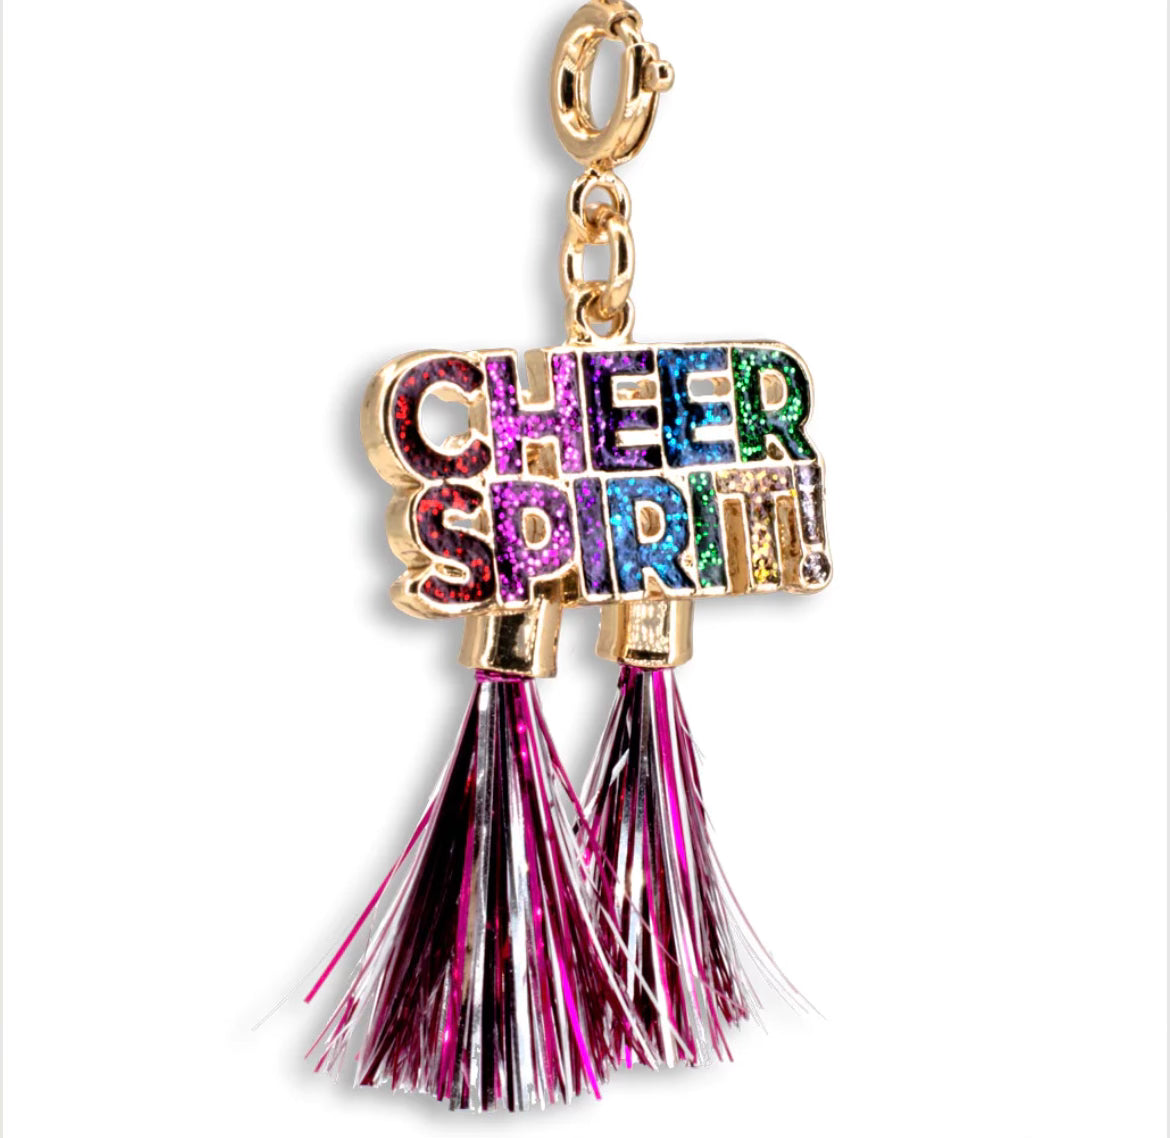 Cheer Spirit Charm